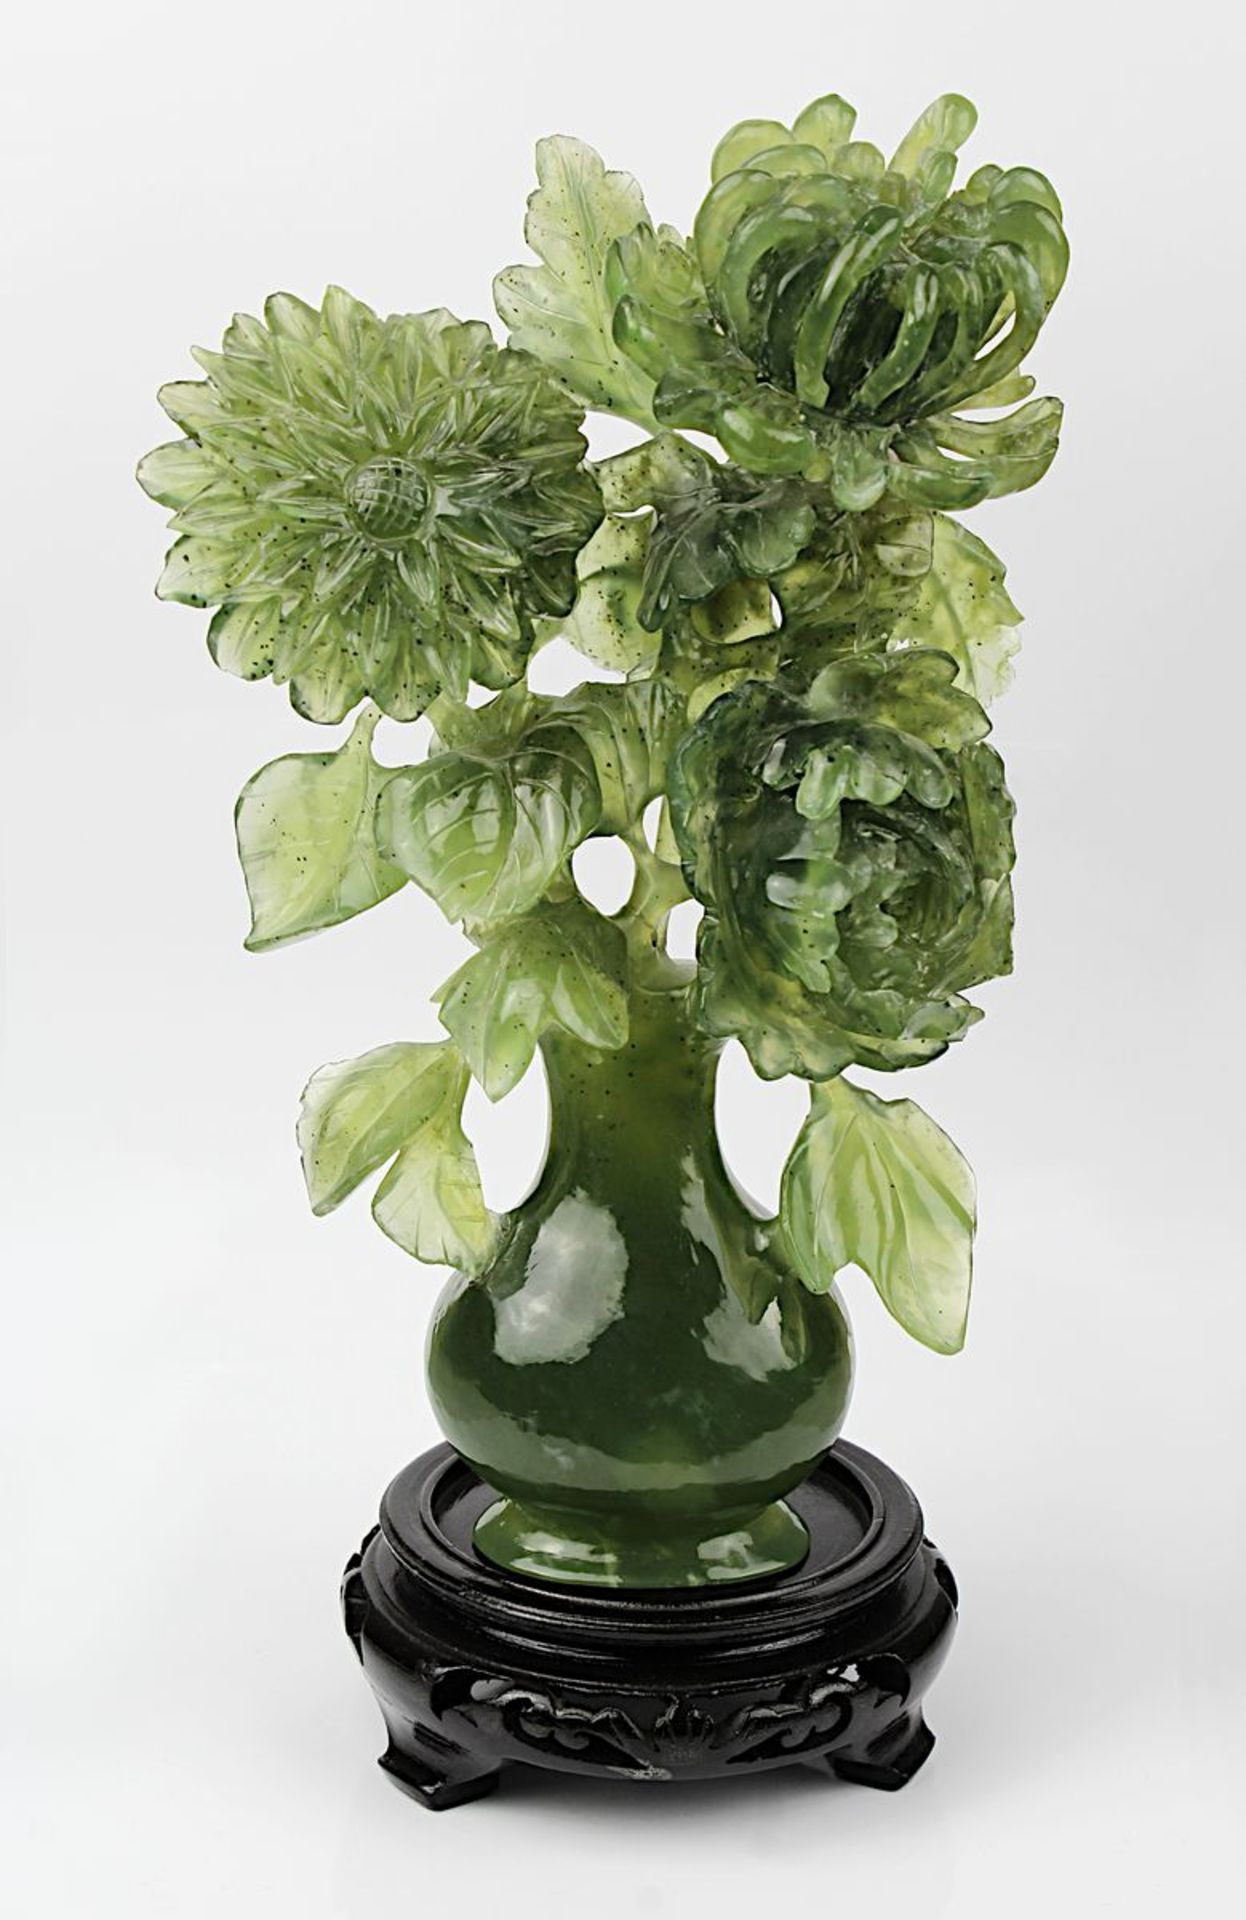 Chinesische Jadeschnitzerei Chrysanthemen in Vase, aufwendig aus einem Stück schöner grüner Jade